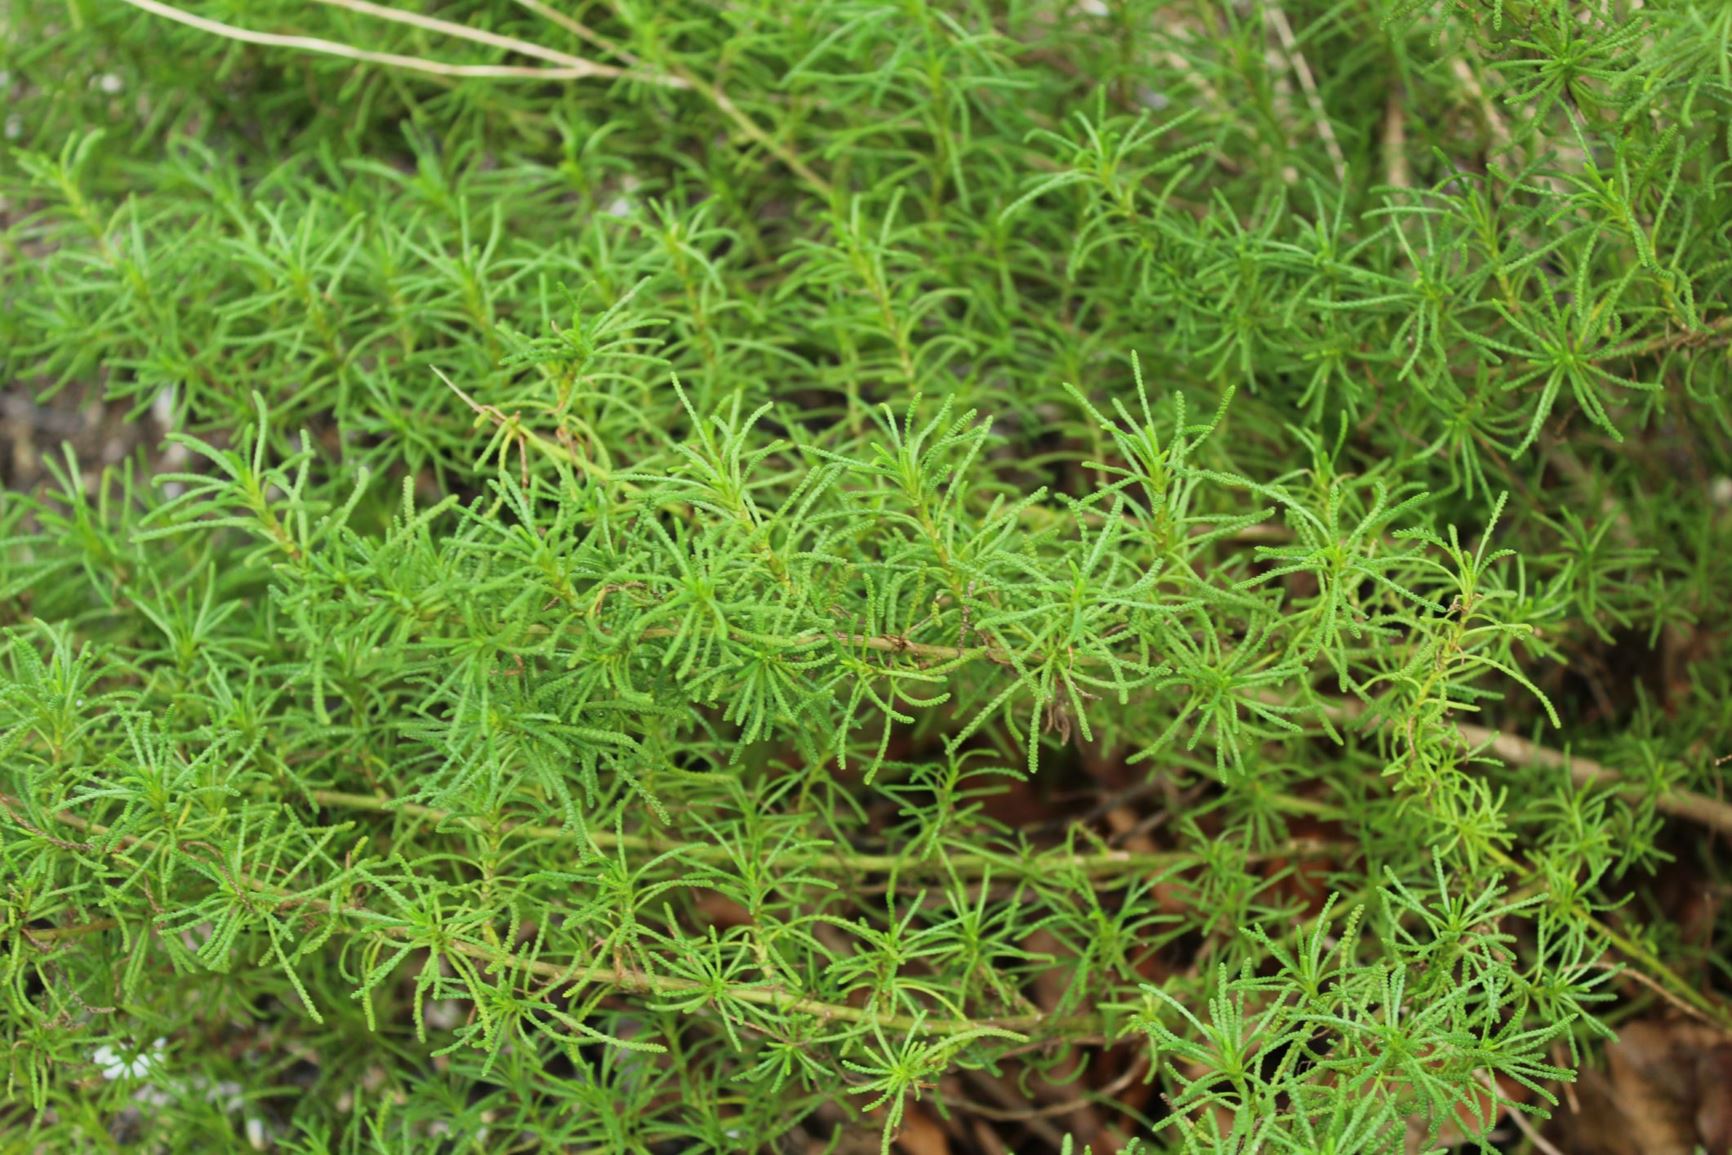 Santolina rosmarinifolia - Heiligenbloem, Cipressenkruid, Holy flax